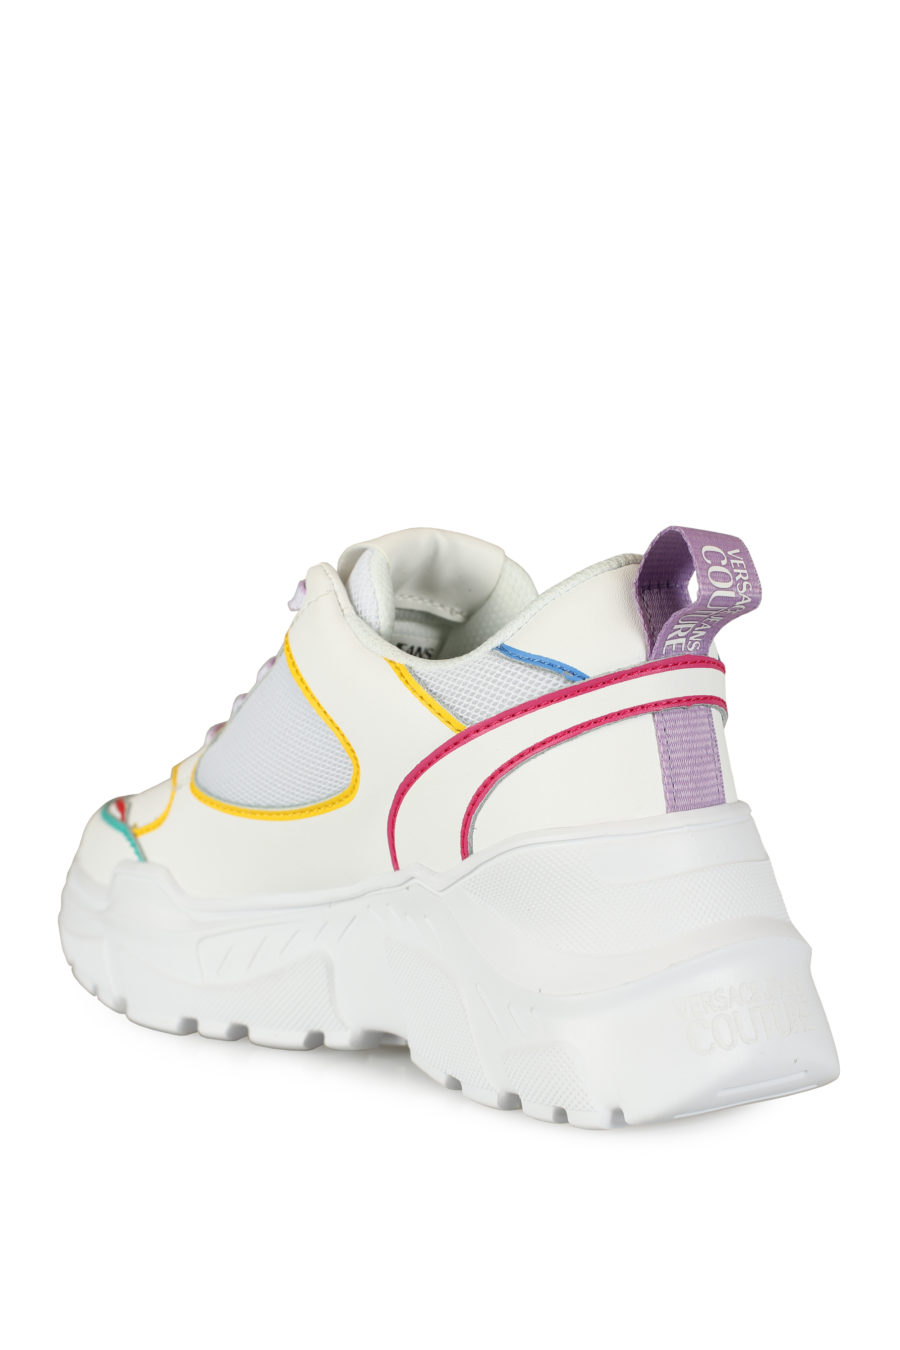 Zapatillas blancas con detalles de colores - IMG 3436